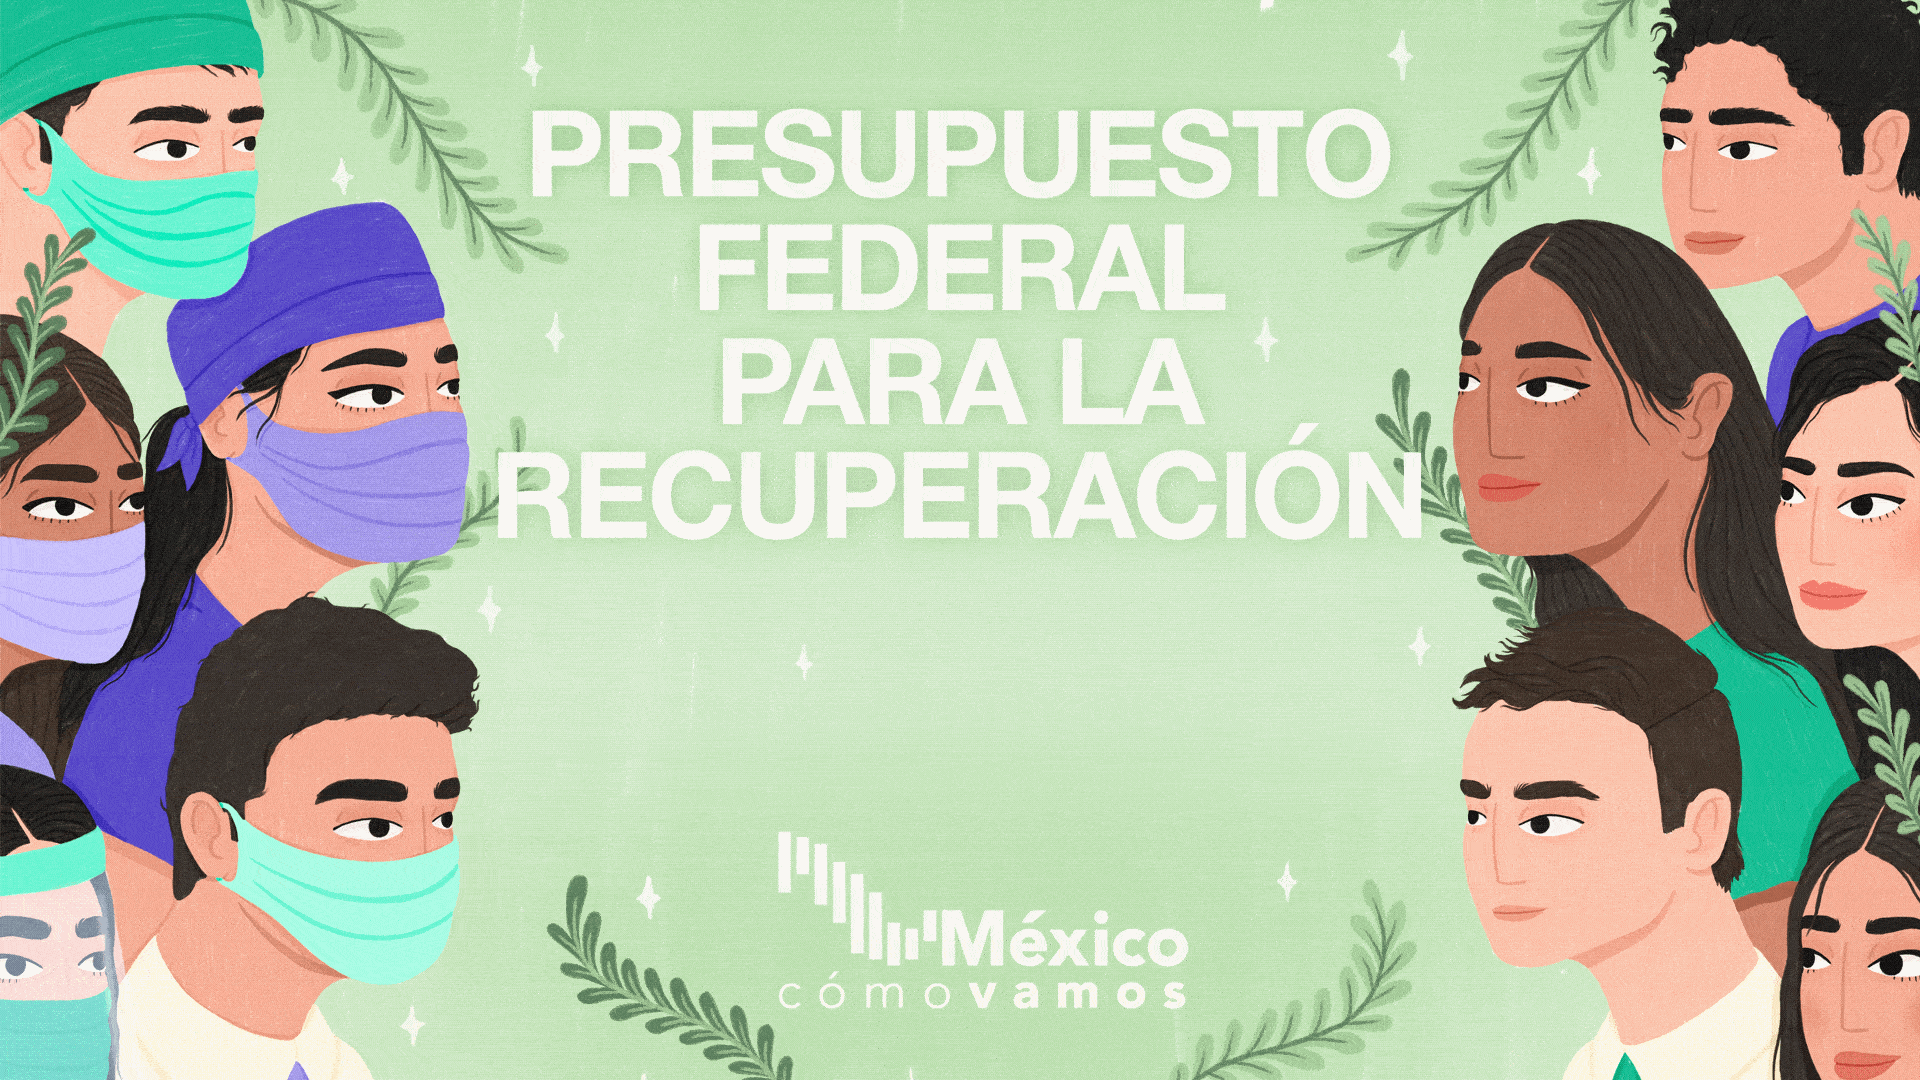 México, ¿cómo vamos? presenta su propuesta del ‘Presupuesto federal para la recuperación’ para atender las prioridades que México debe tener ante la crisis actual